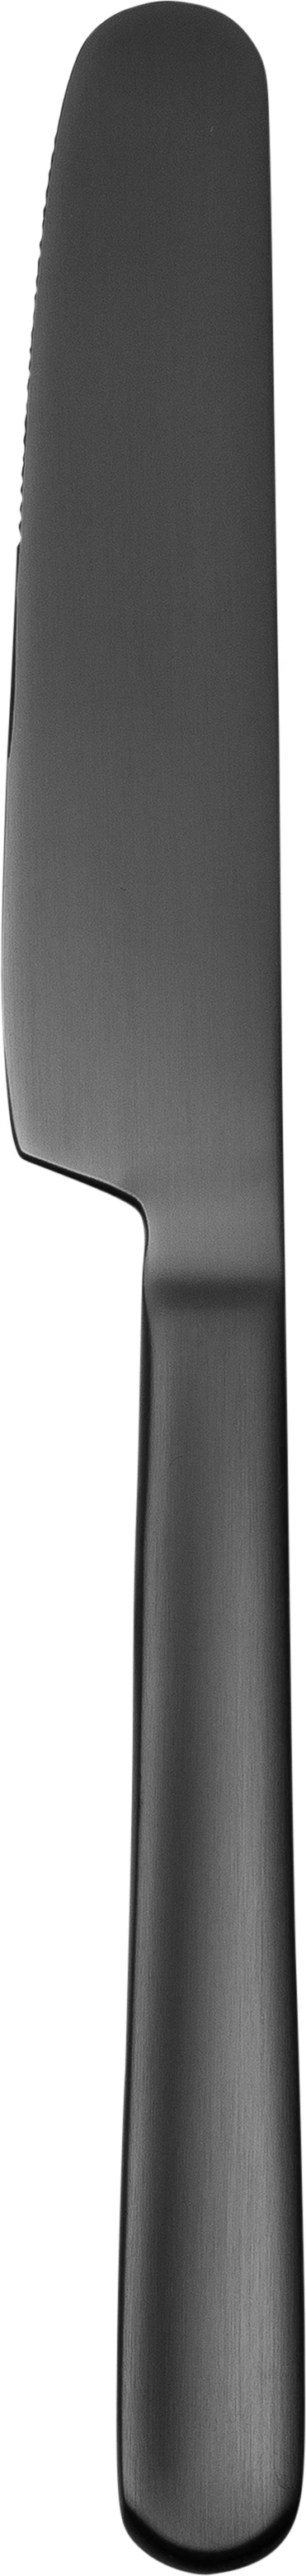 Harlang bordkniv, sort, 21,5 cm